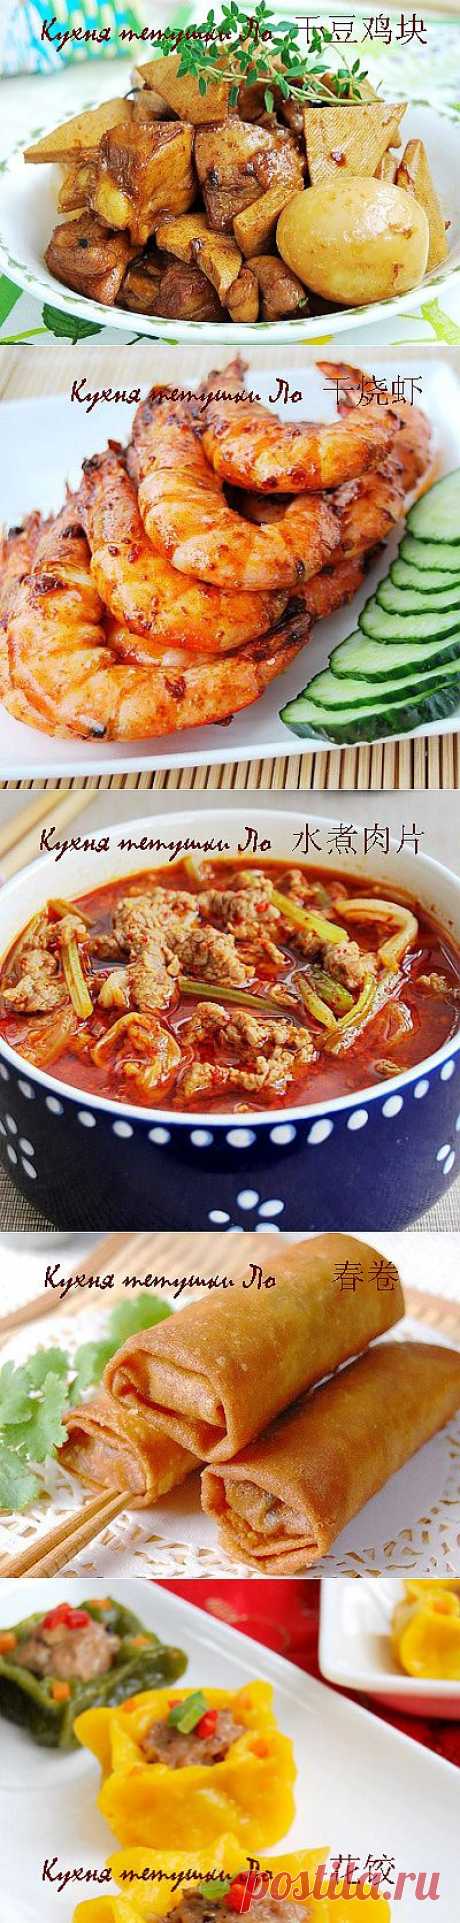 Рецепты китайской кухни - Кухня тетушки Ло - рецепты от Архив рецептов